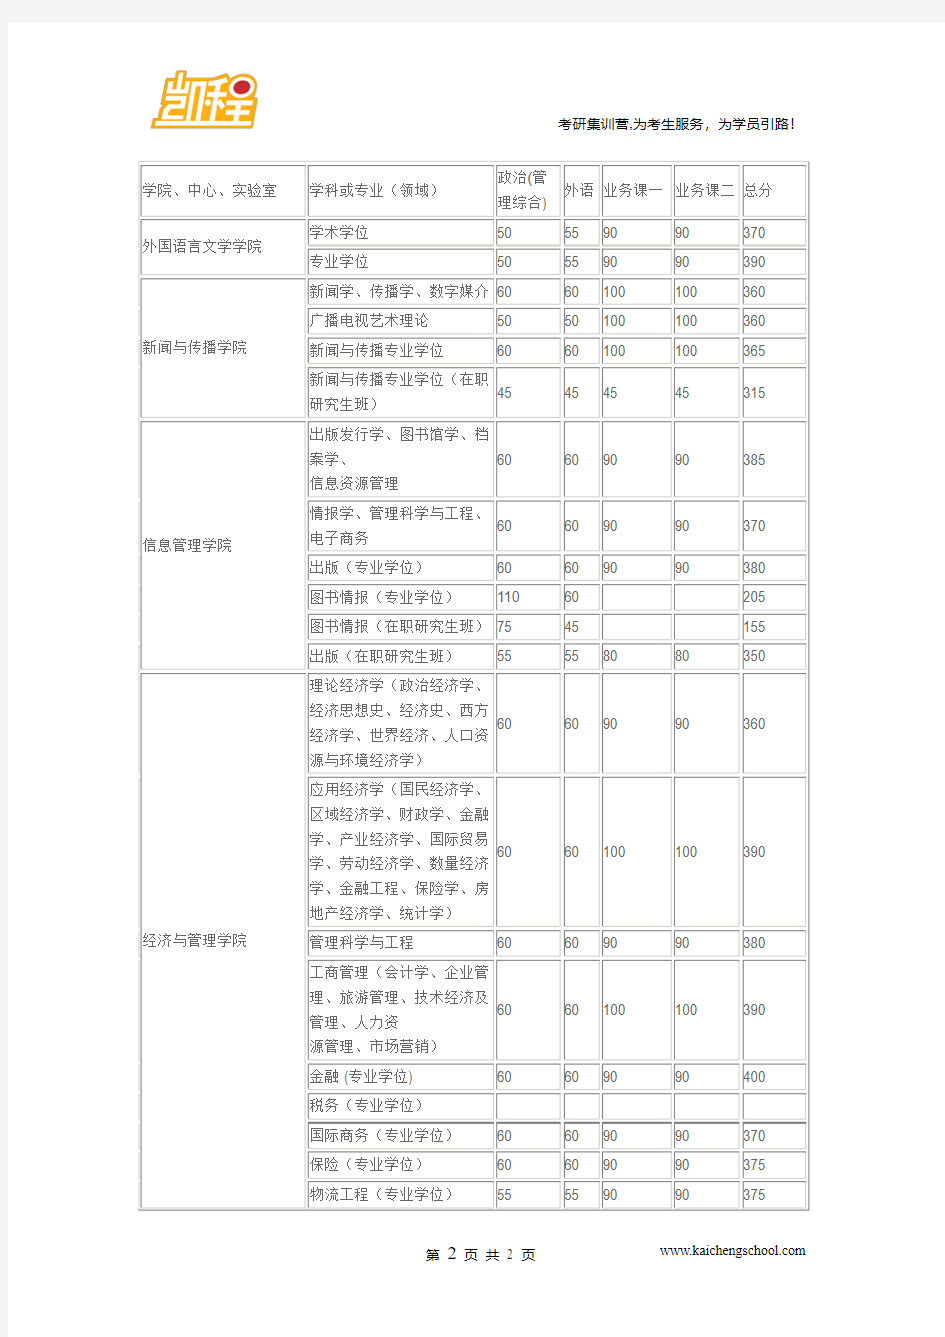 2015年武汉大学印刷与包装系专业学位复试分数线是365分